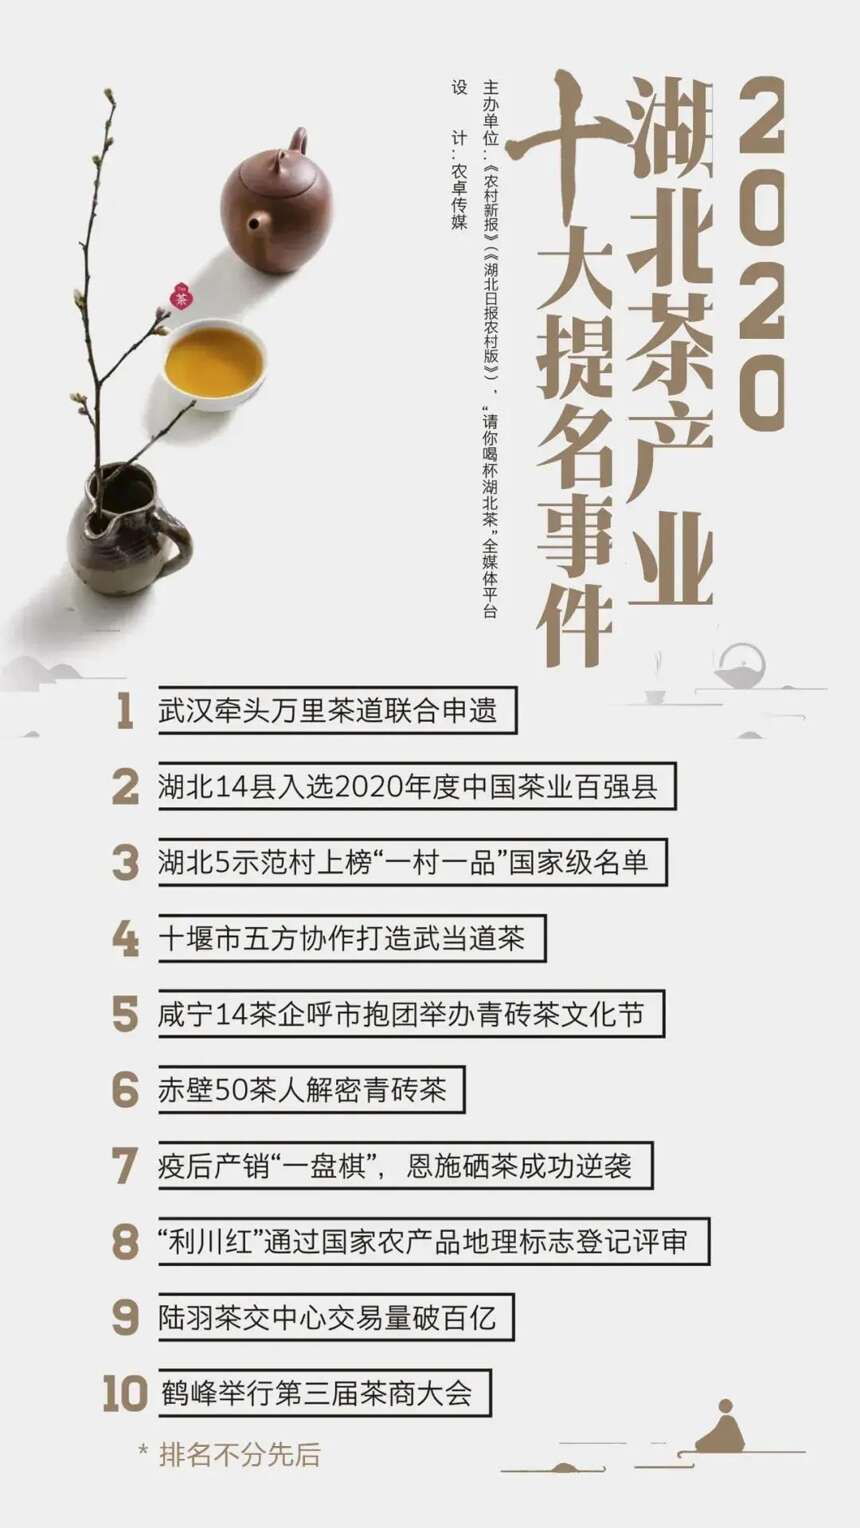 湖北省茶叶学会七届十次常务理事会在宜昌成功召开